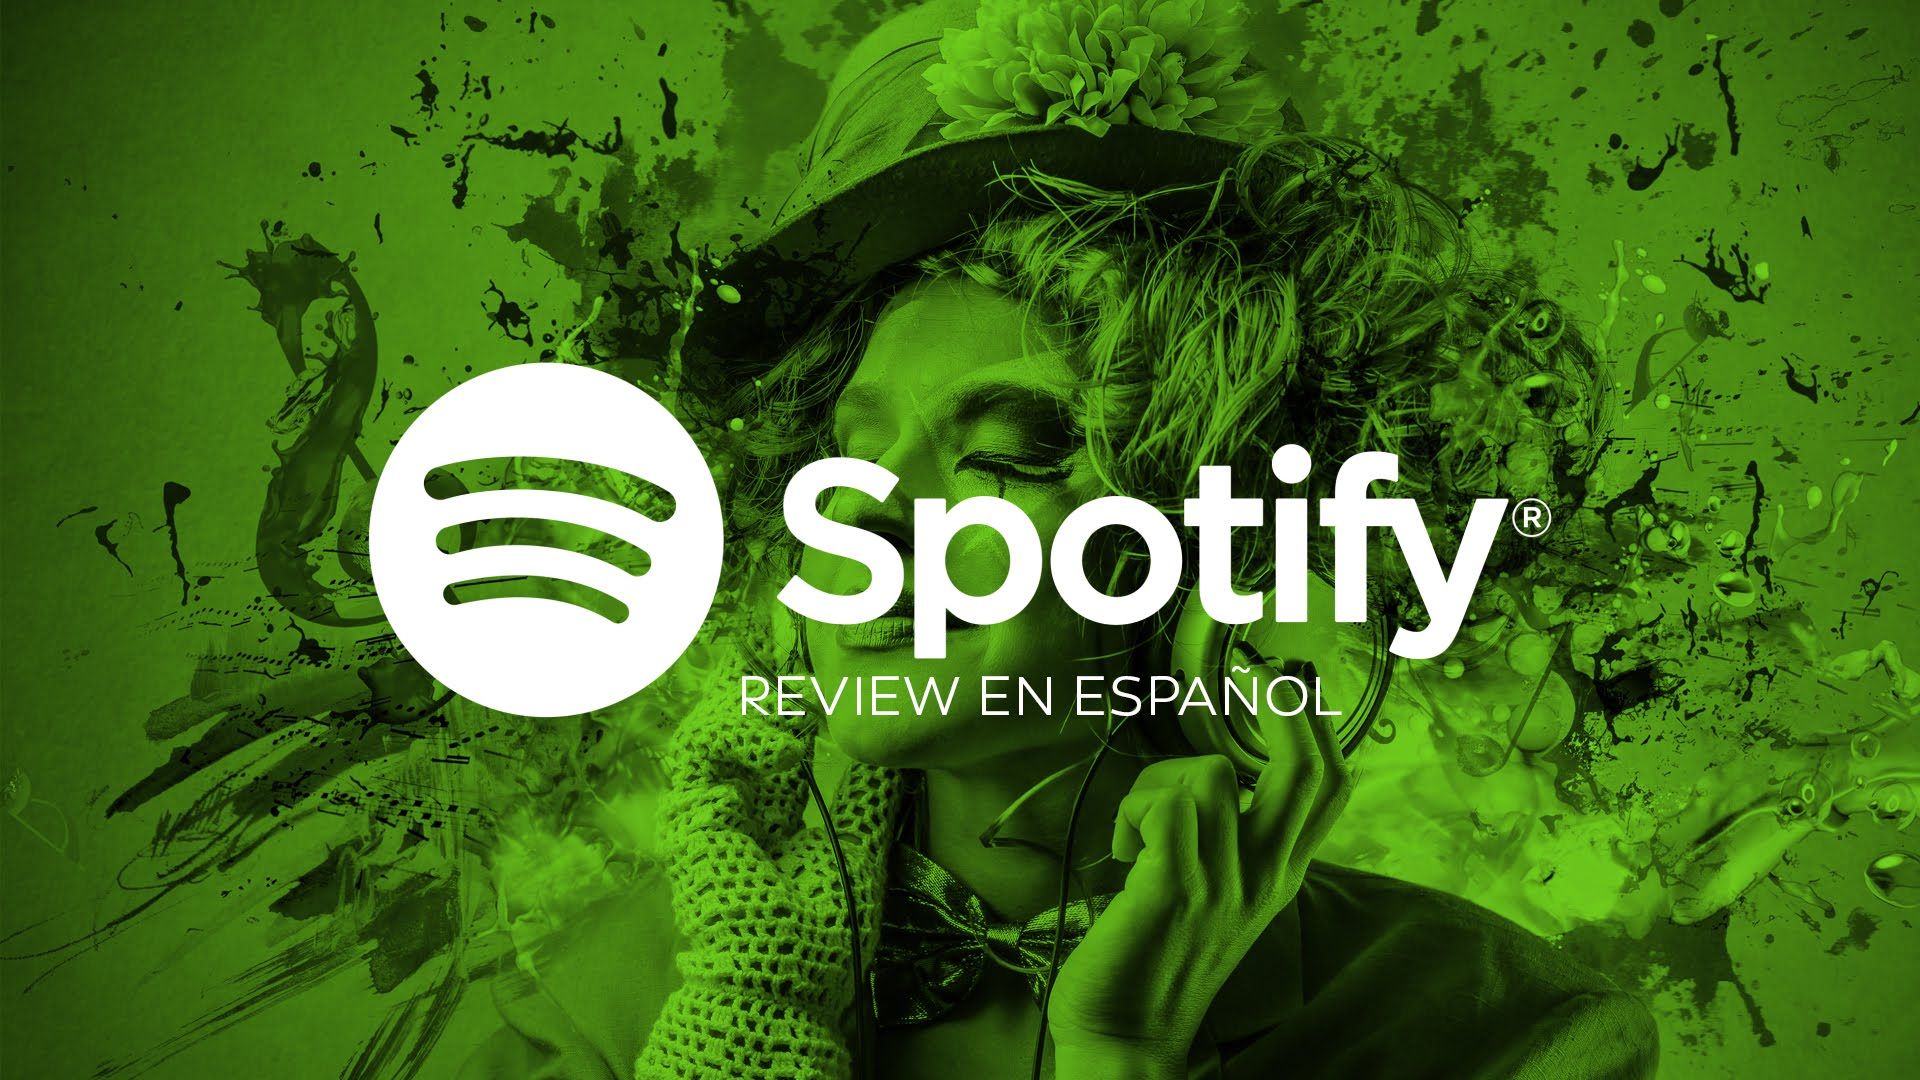 Spotify Espanol Wallpaper